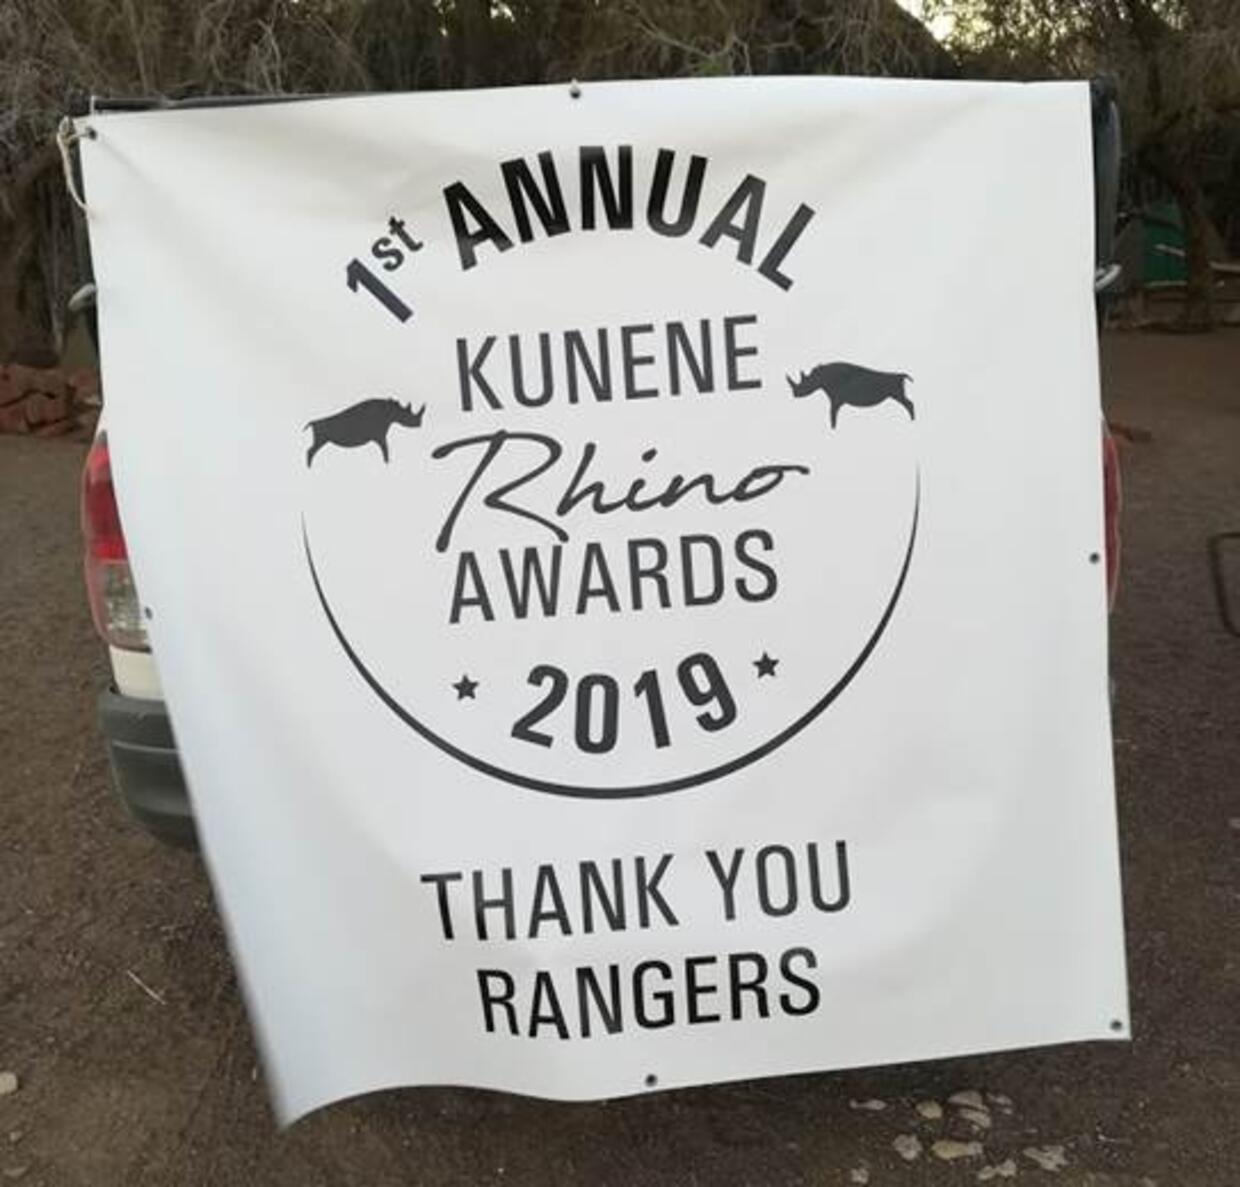 Kunene rhino awards event